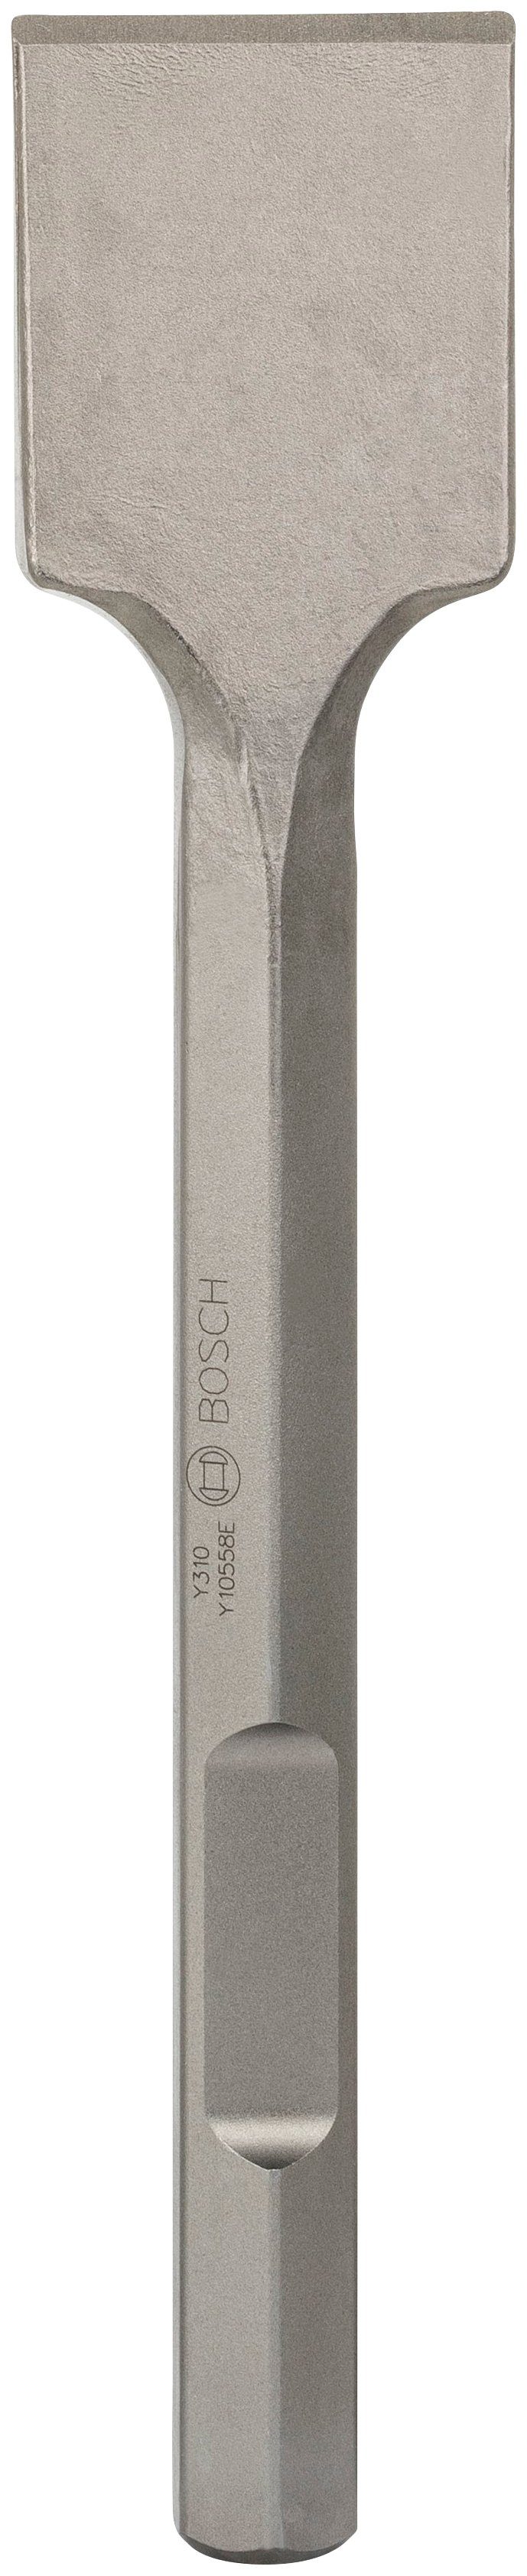 41 Bosch 400 in Professional 80 28-mm-Sechskantaufnahme mm mm, x Spatmeißel,